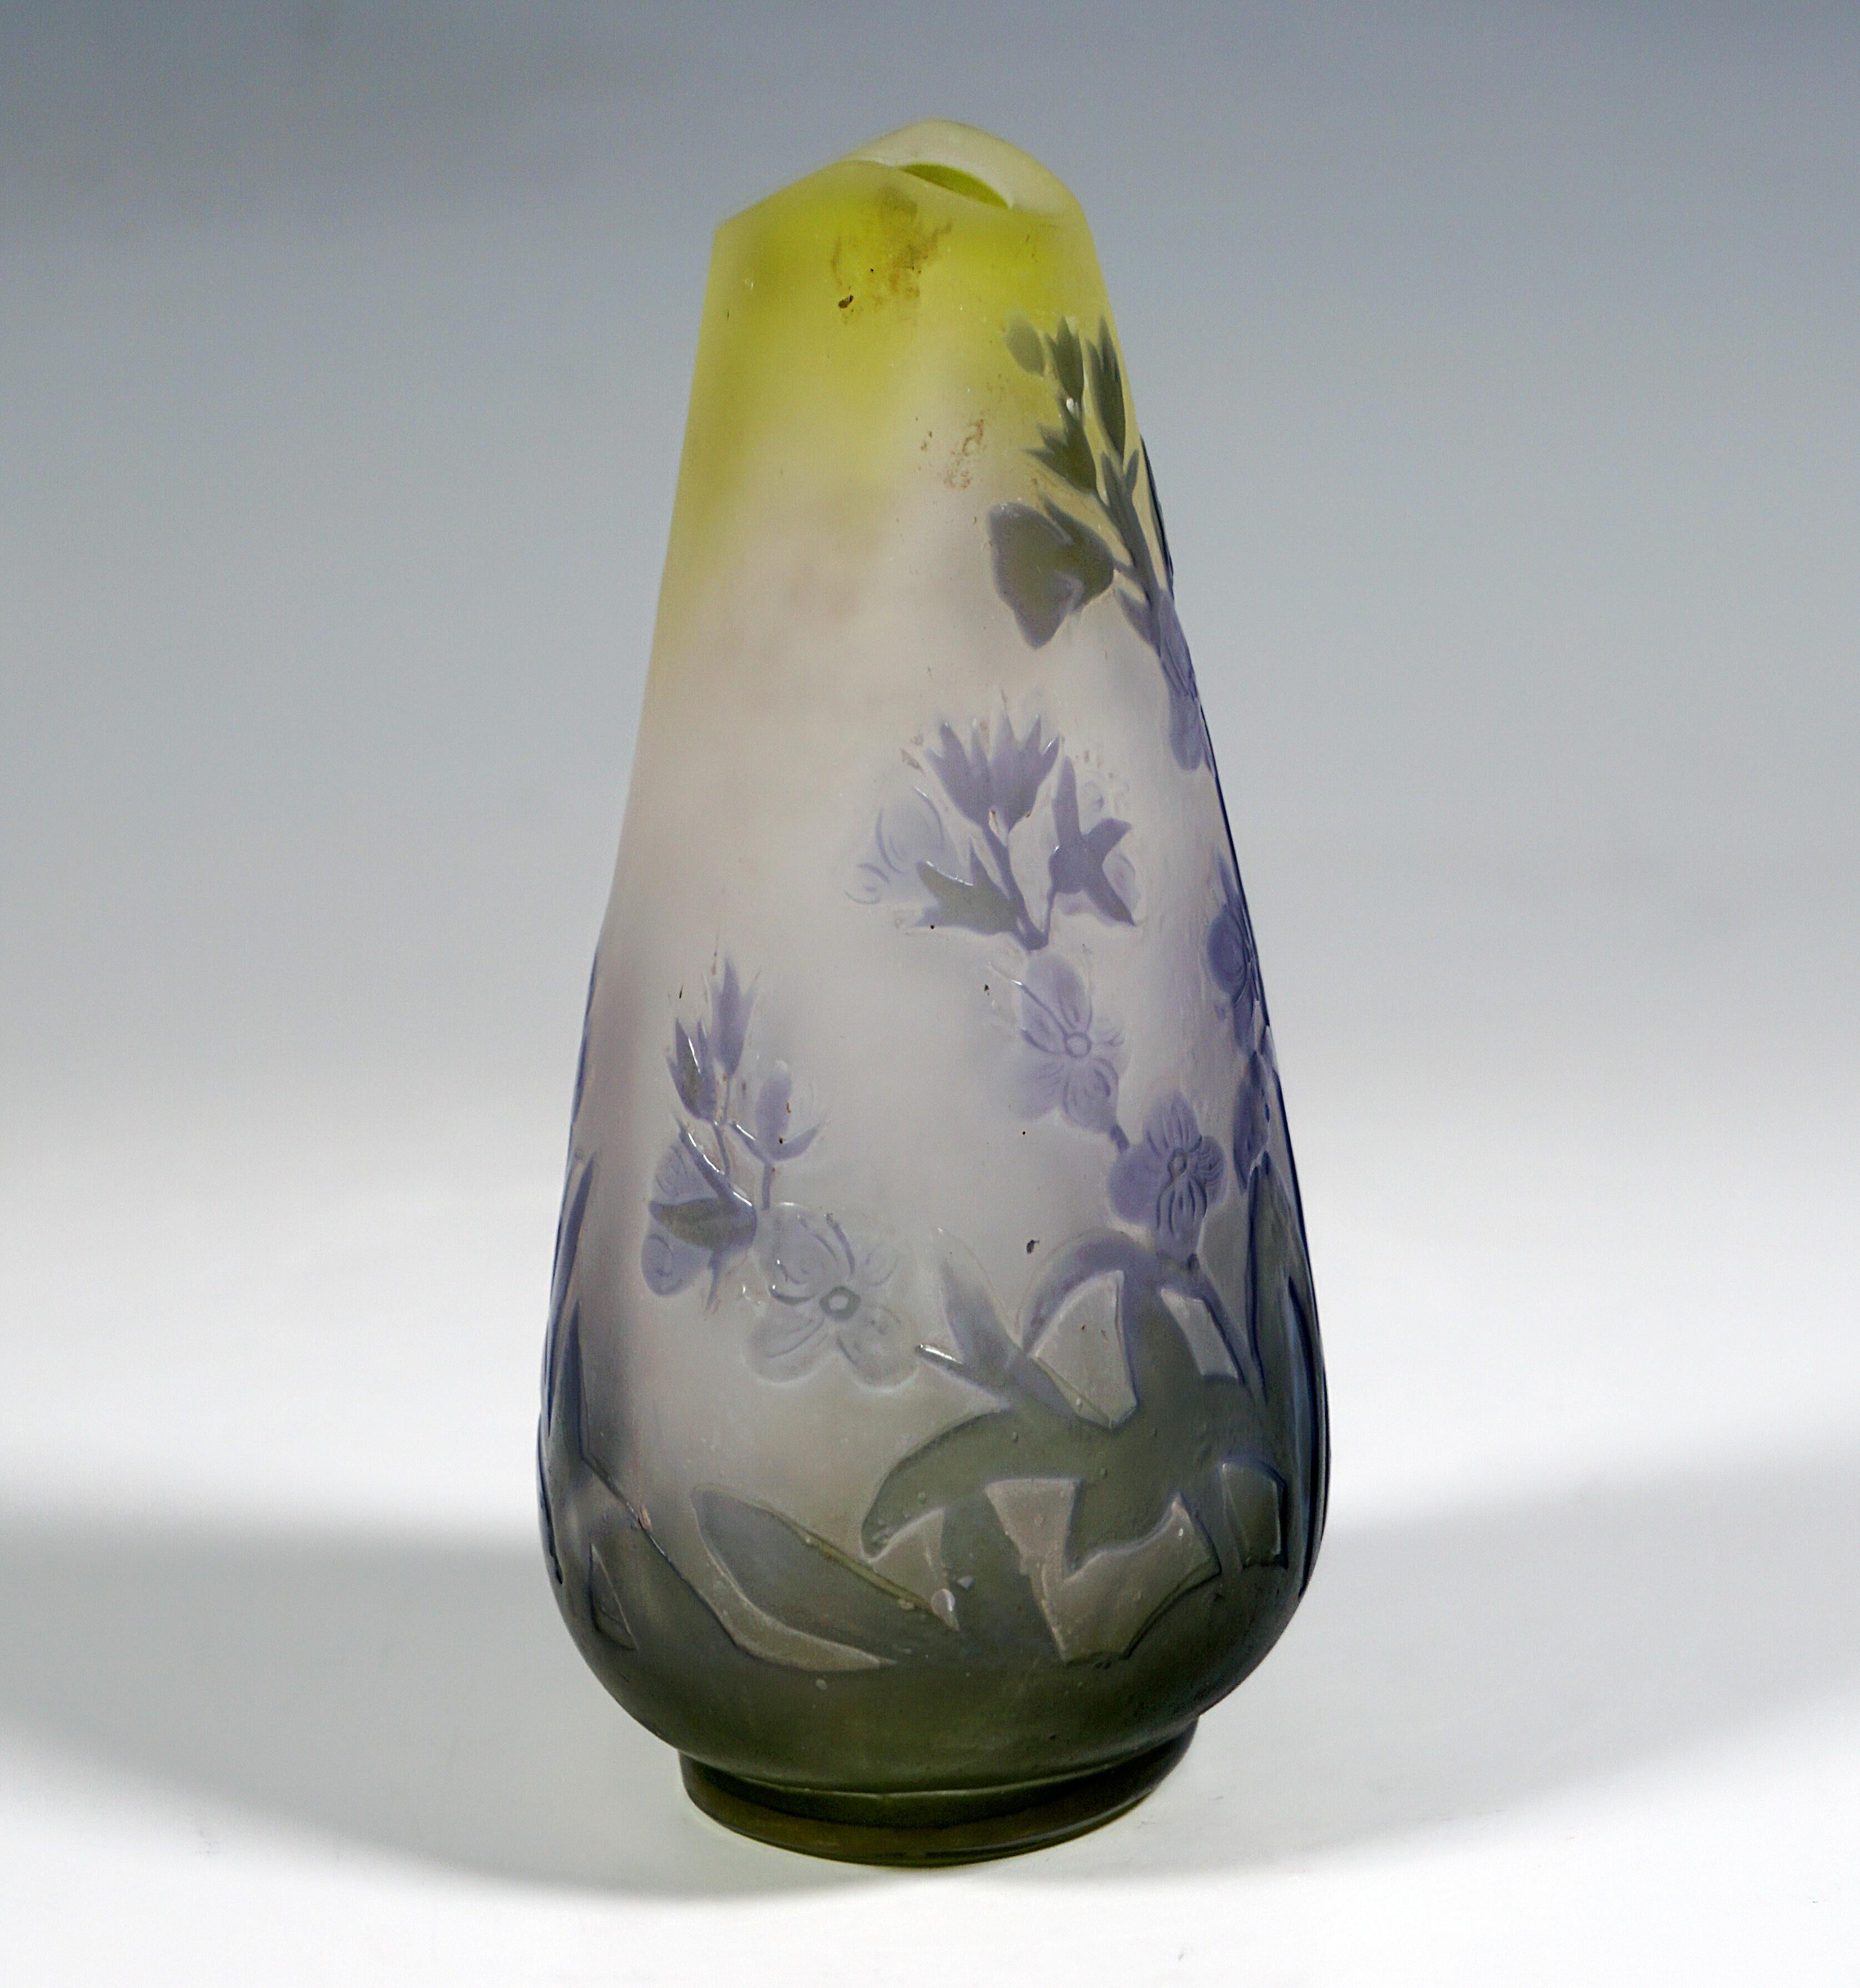 Etched Émile Gallé Art Nouveau Drop-Shaped Vase with Floral Decor, France 1903/04